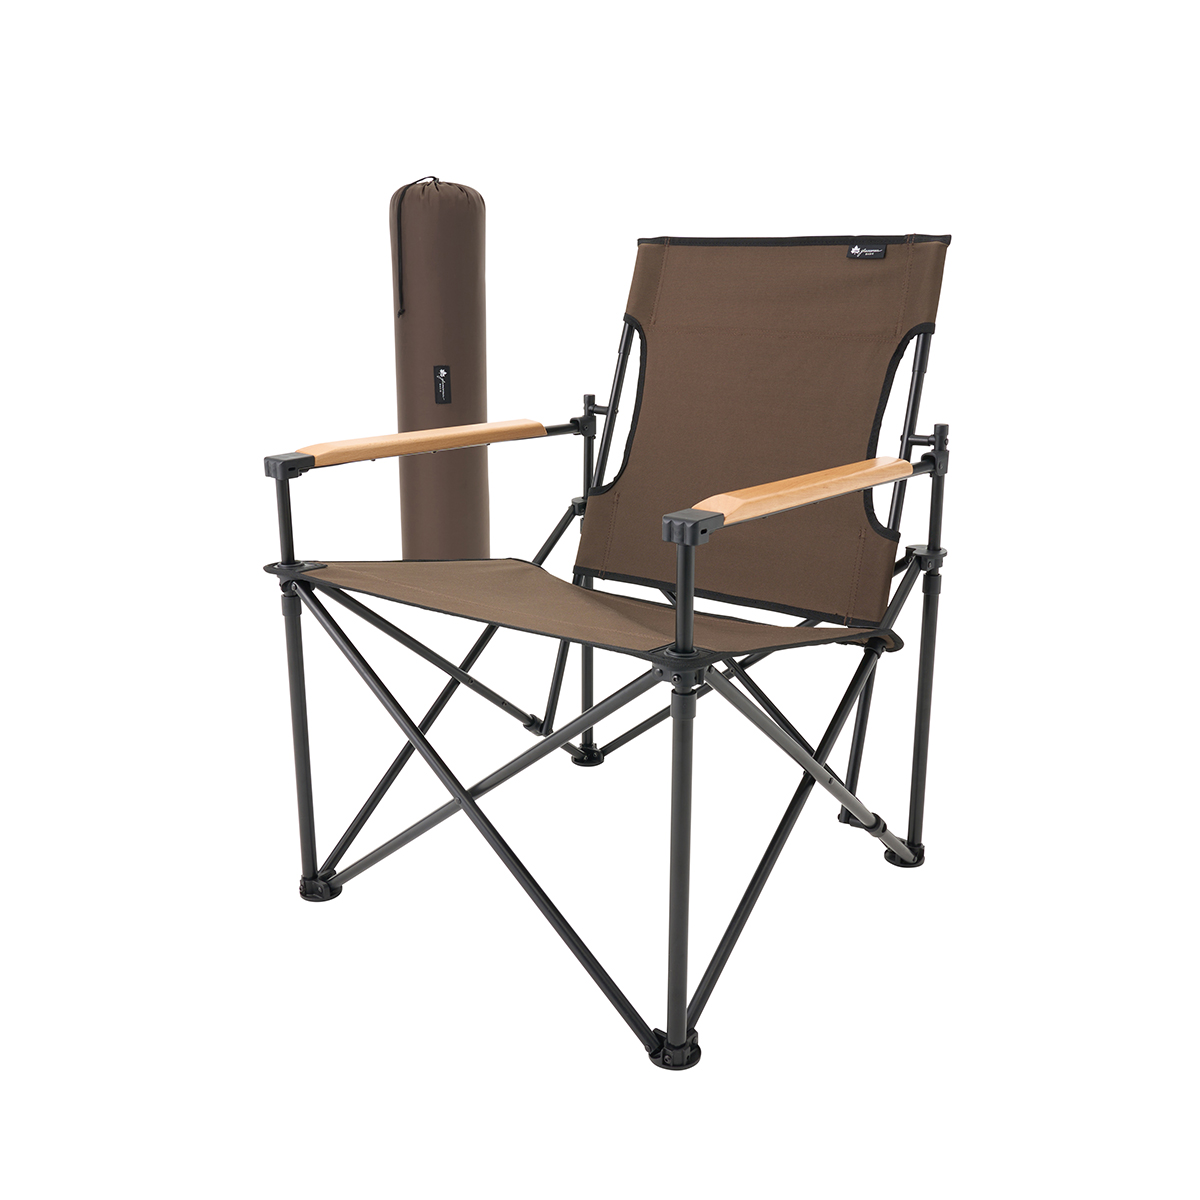 グランベーシック モダンチェア-BC|ギア|家具|椅子・ベンチ|製品情報